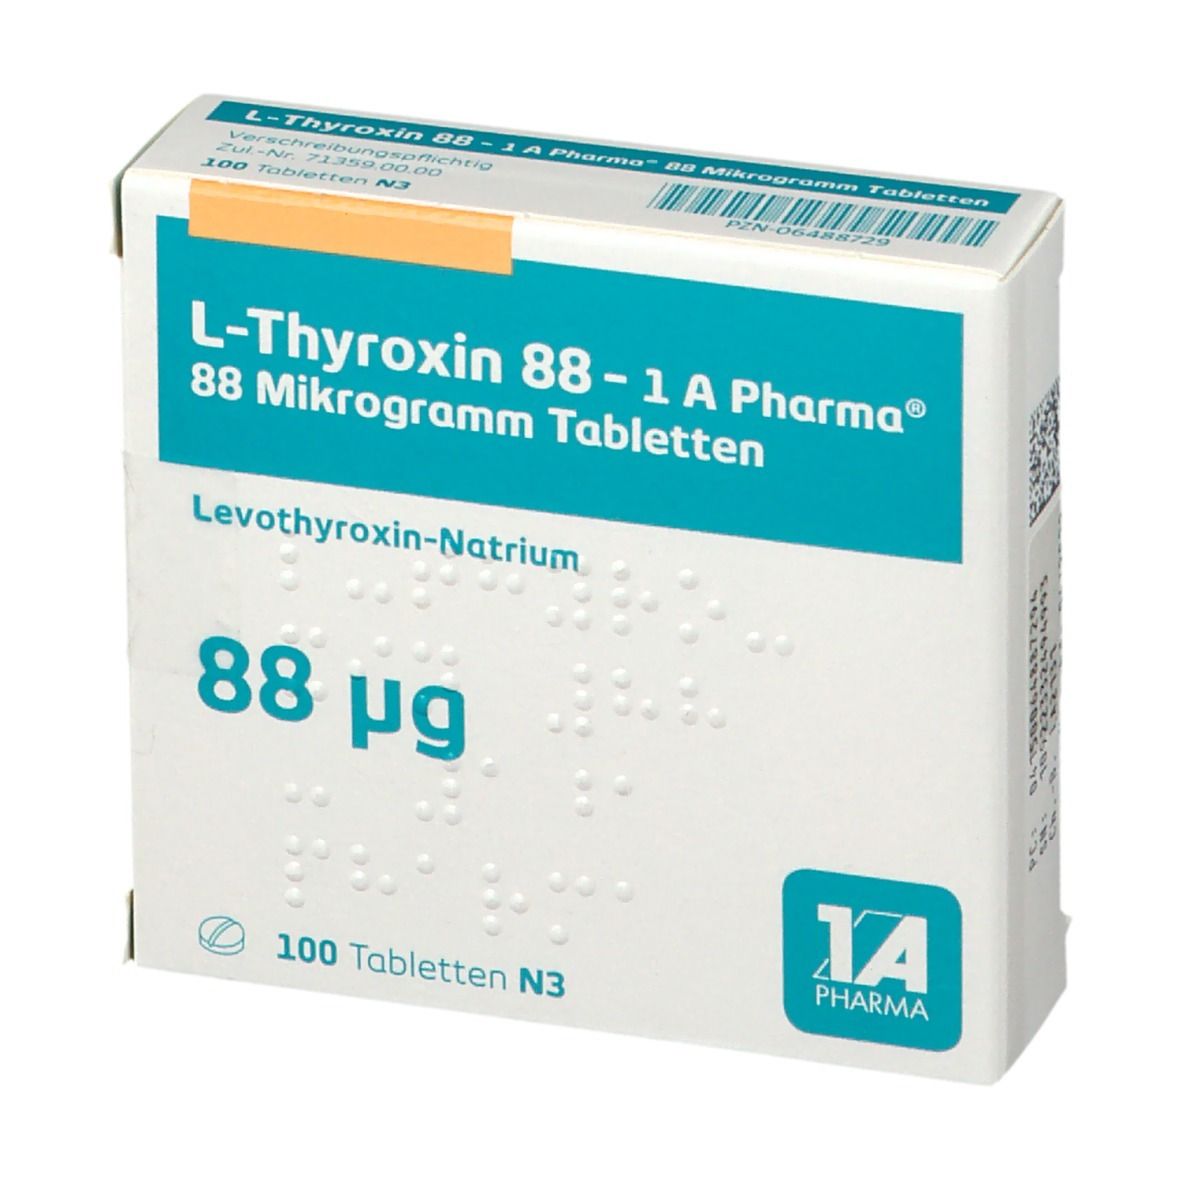 L Thyroxin 88 1A Pharma®